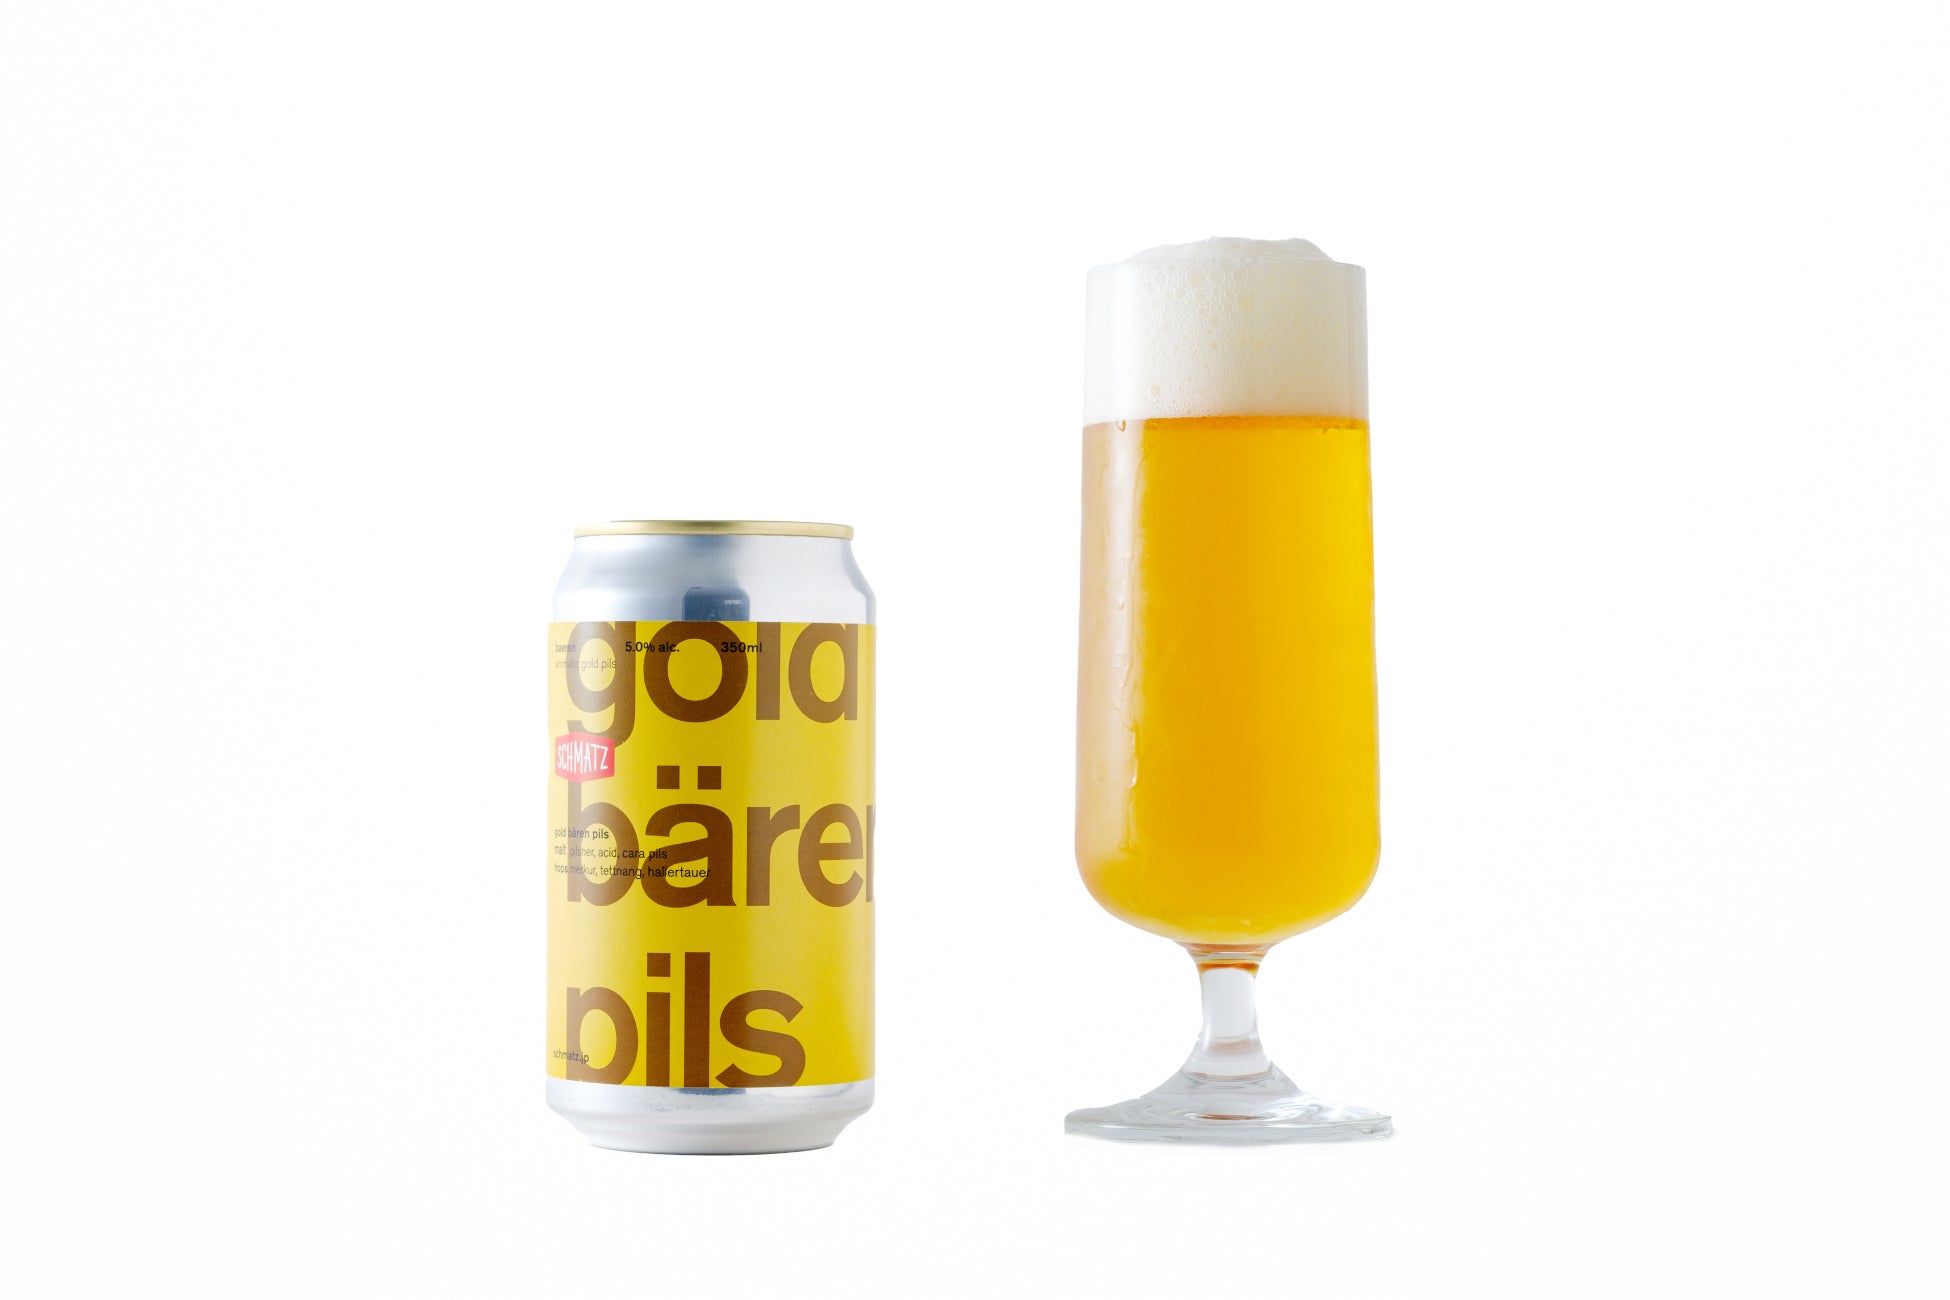 【シュマッツ】暑い真夏にピッタリの黄金ビール「gold bären pils」を7月24日に販売開始！